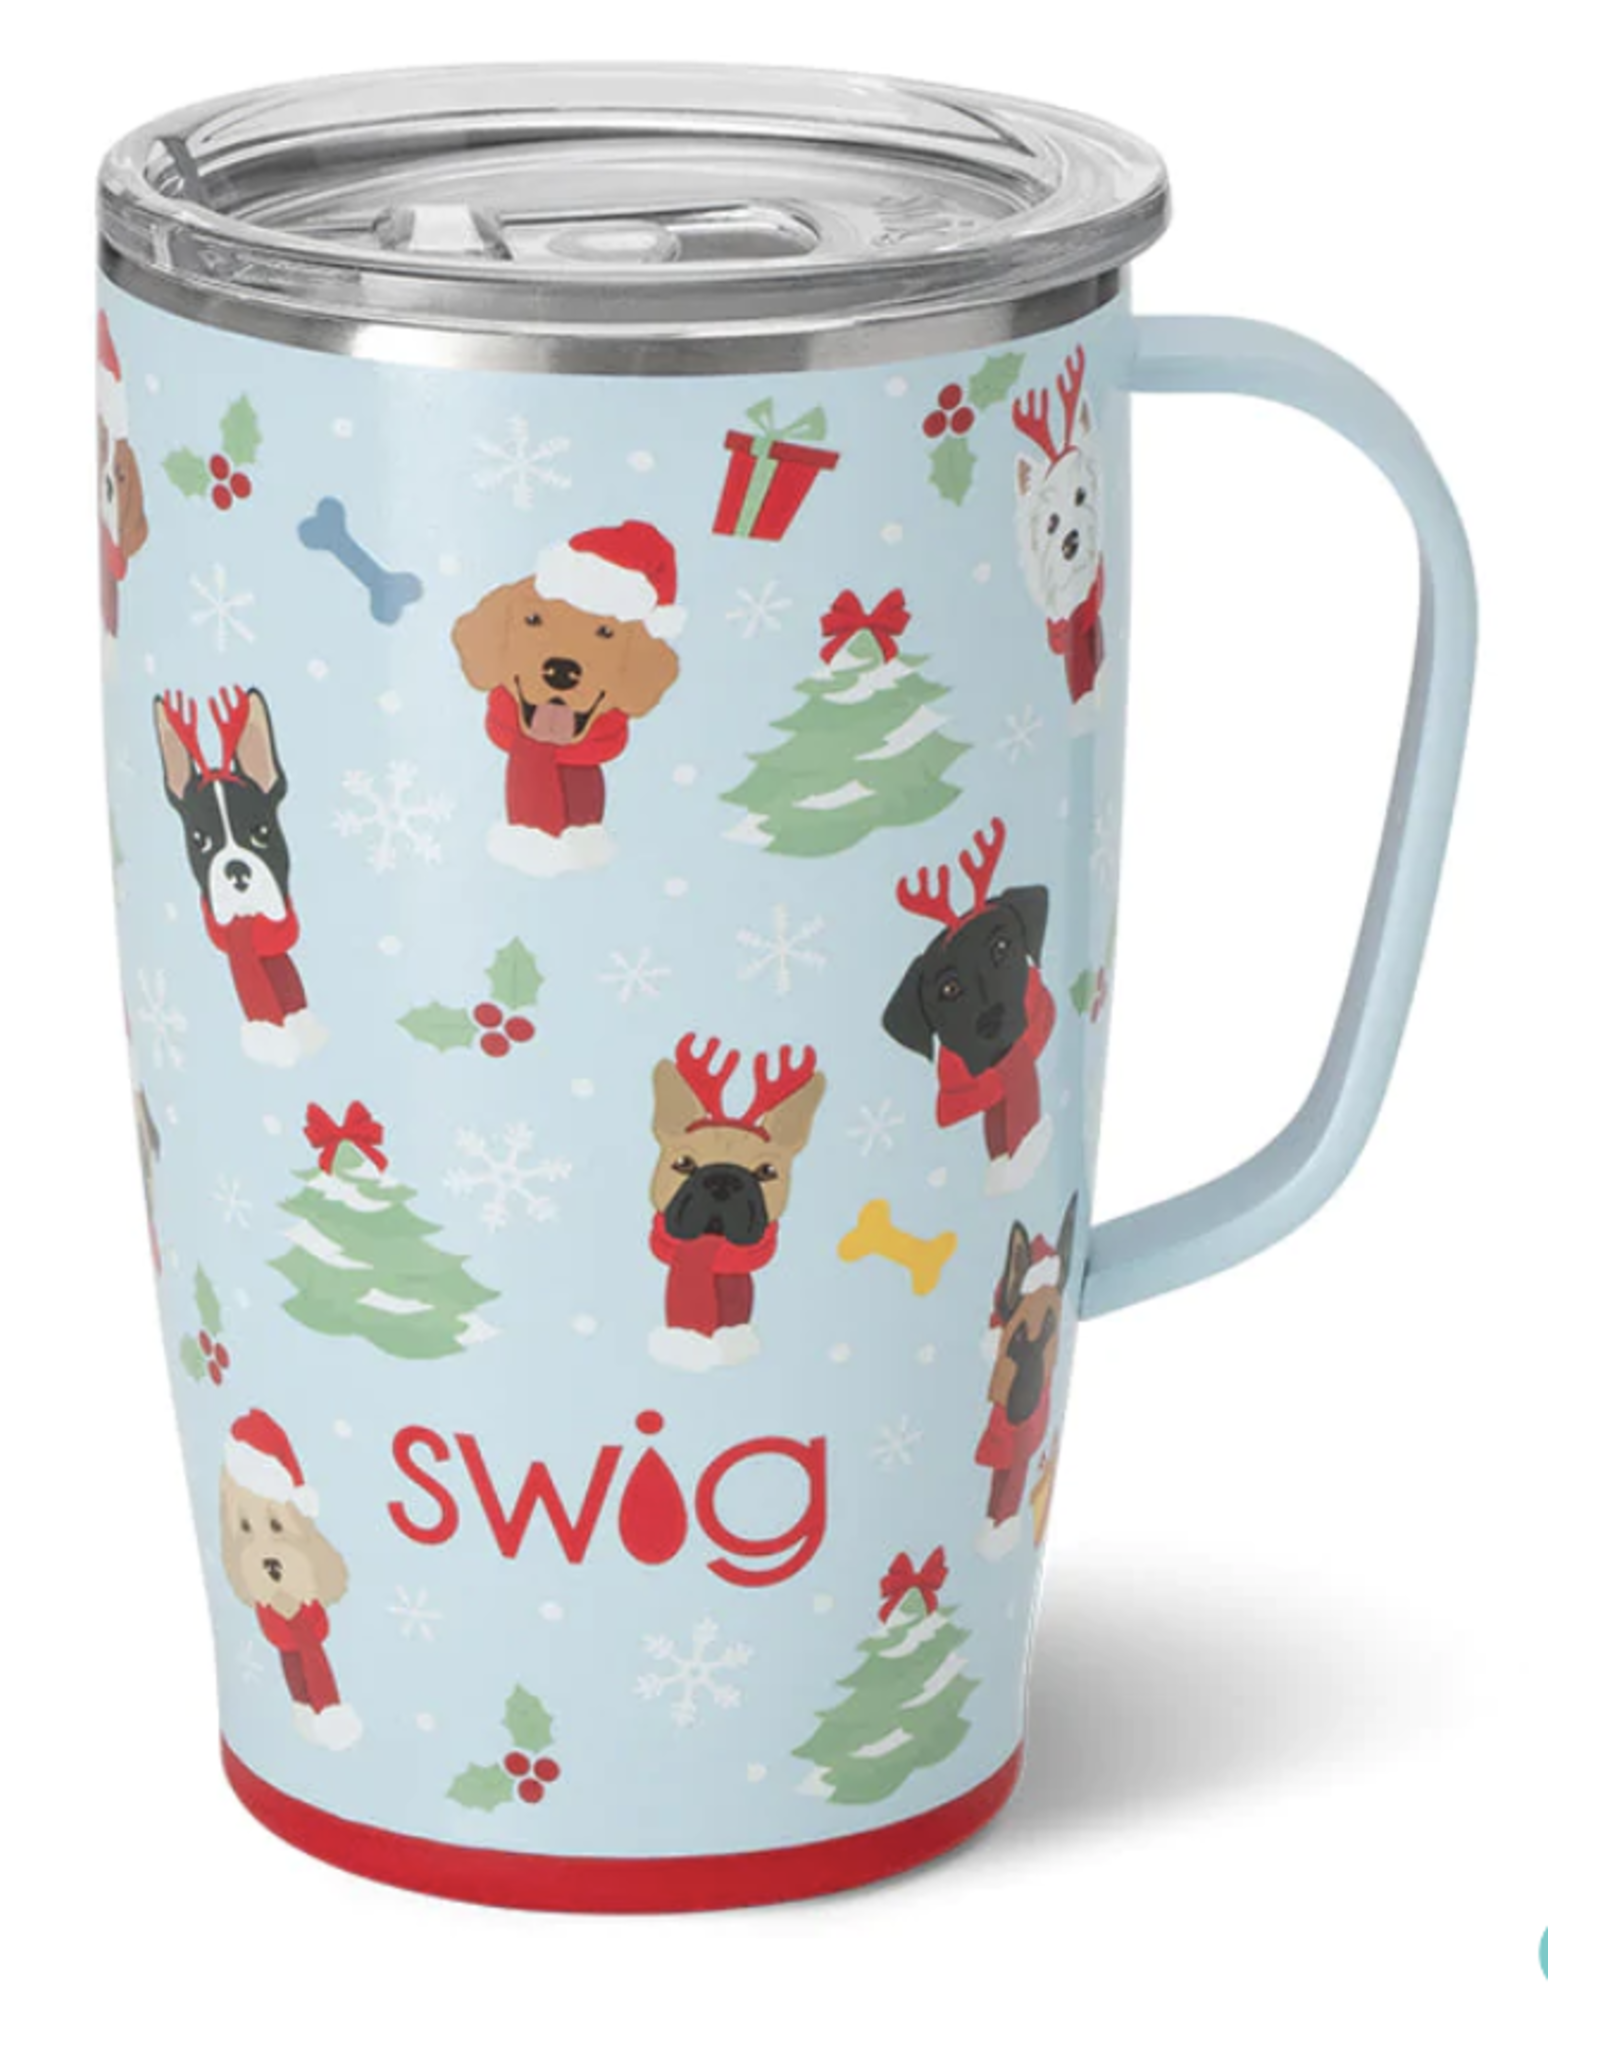 Swig Santa Paws Travel Mug (18 oz)